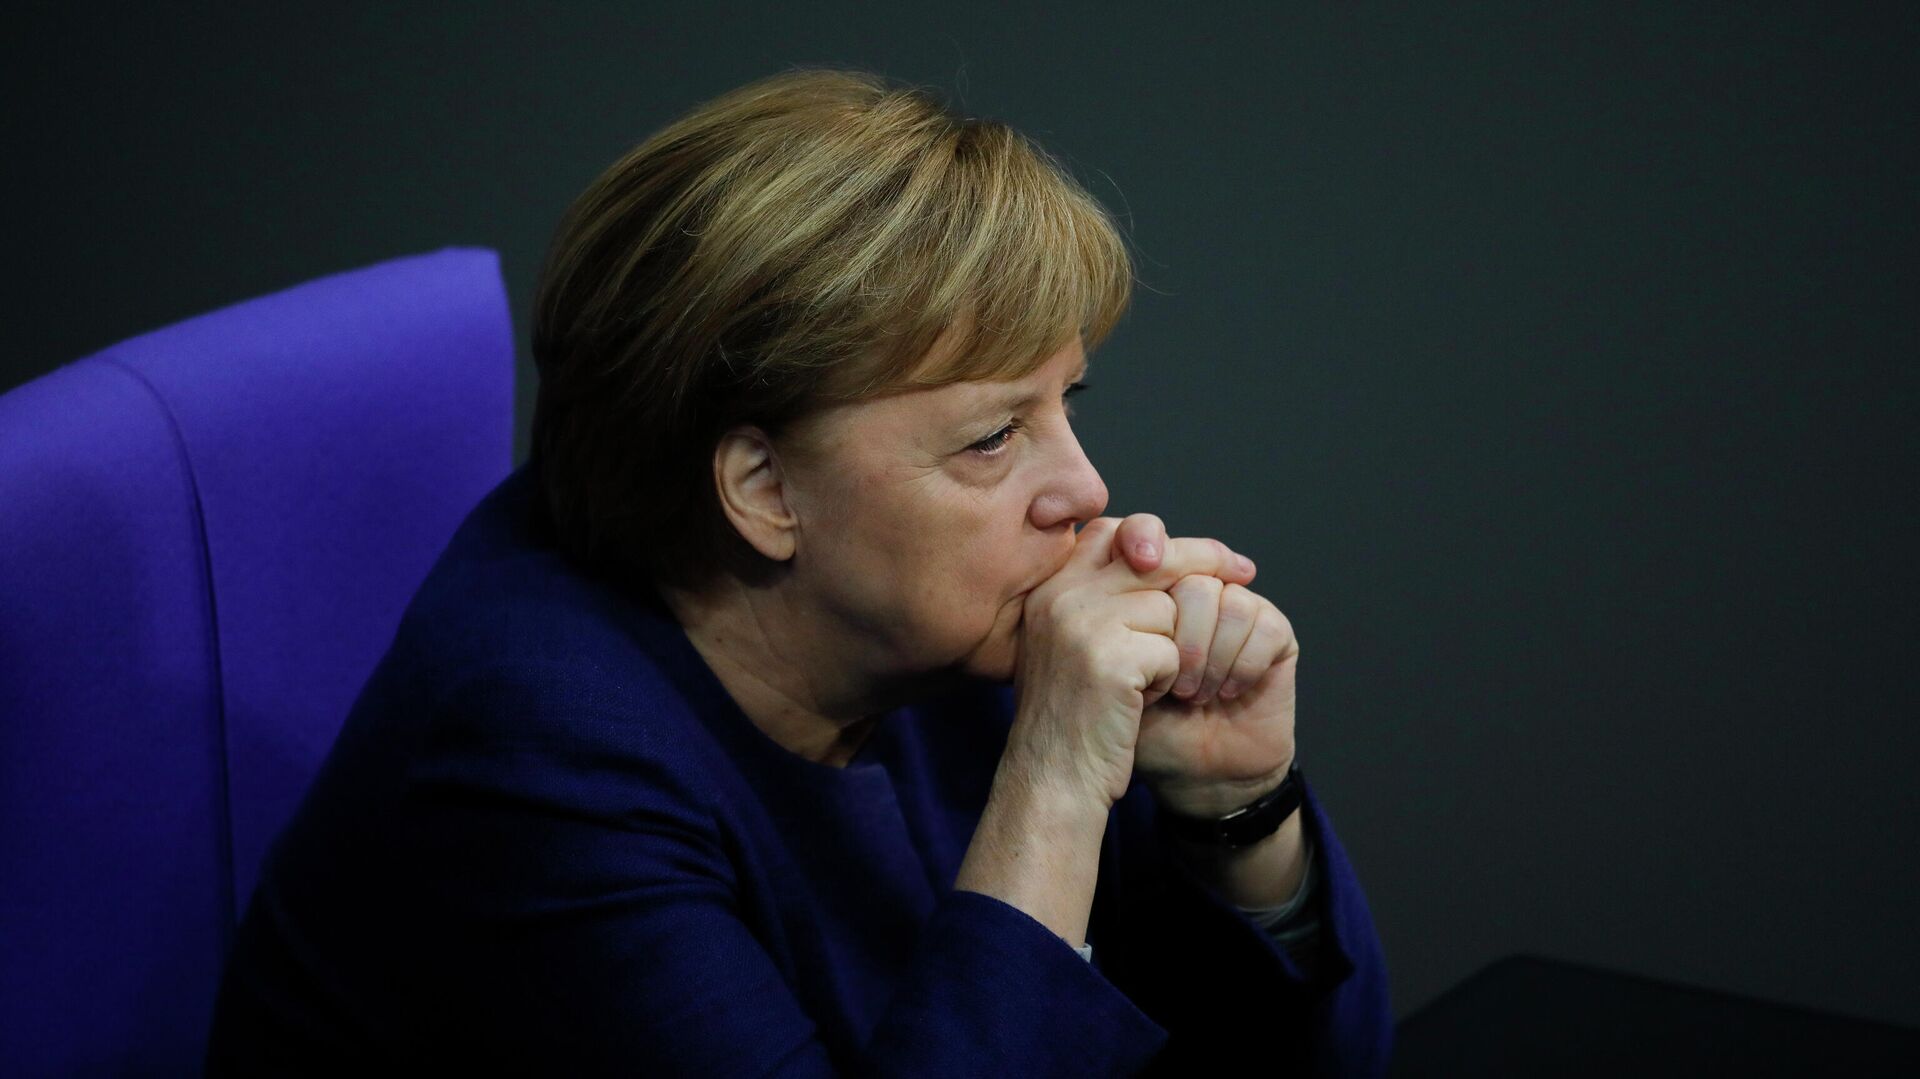 Канцлер Германи Ангела Меркель в Бундестаге, Берлин  - РИА Новости, 1920, 17.05.2021